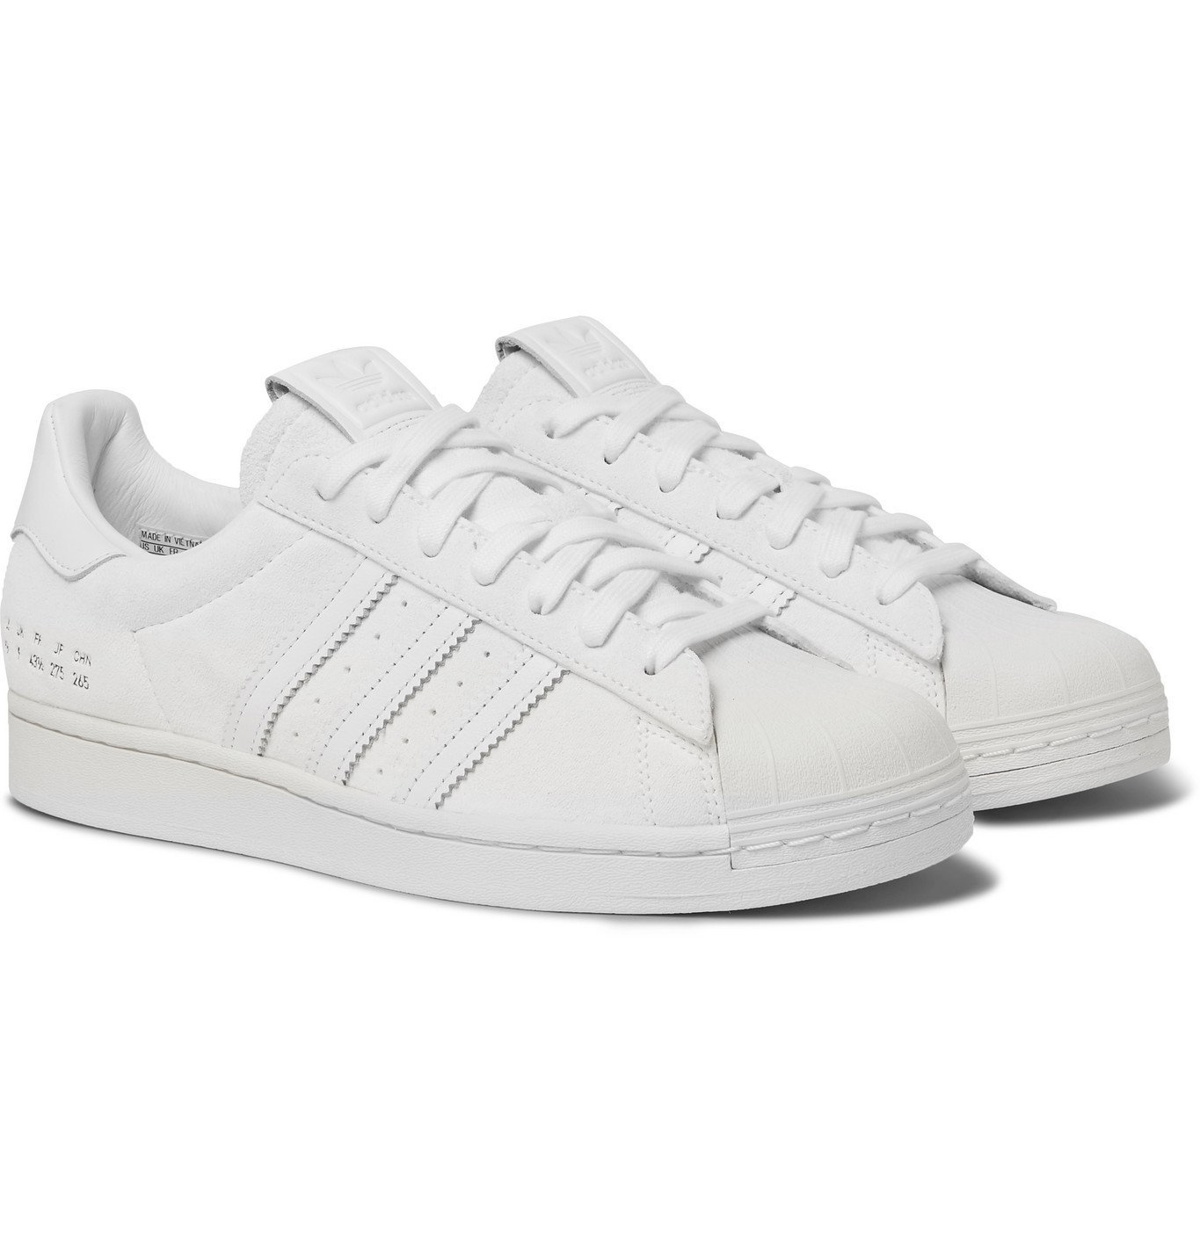 Adiccion Europa Saga ADIDAS ORIGINALS - Premium Basics Superstar Leather-Trimmed Suede Sneakers  - White adidas Originals